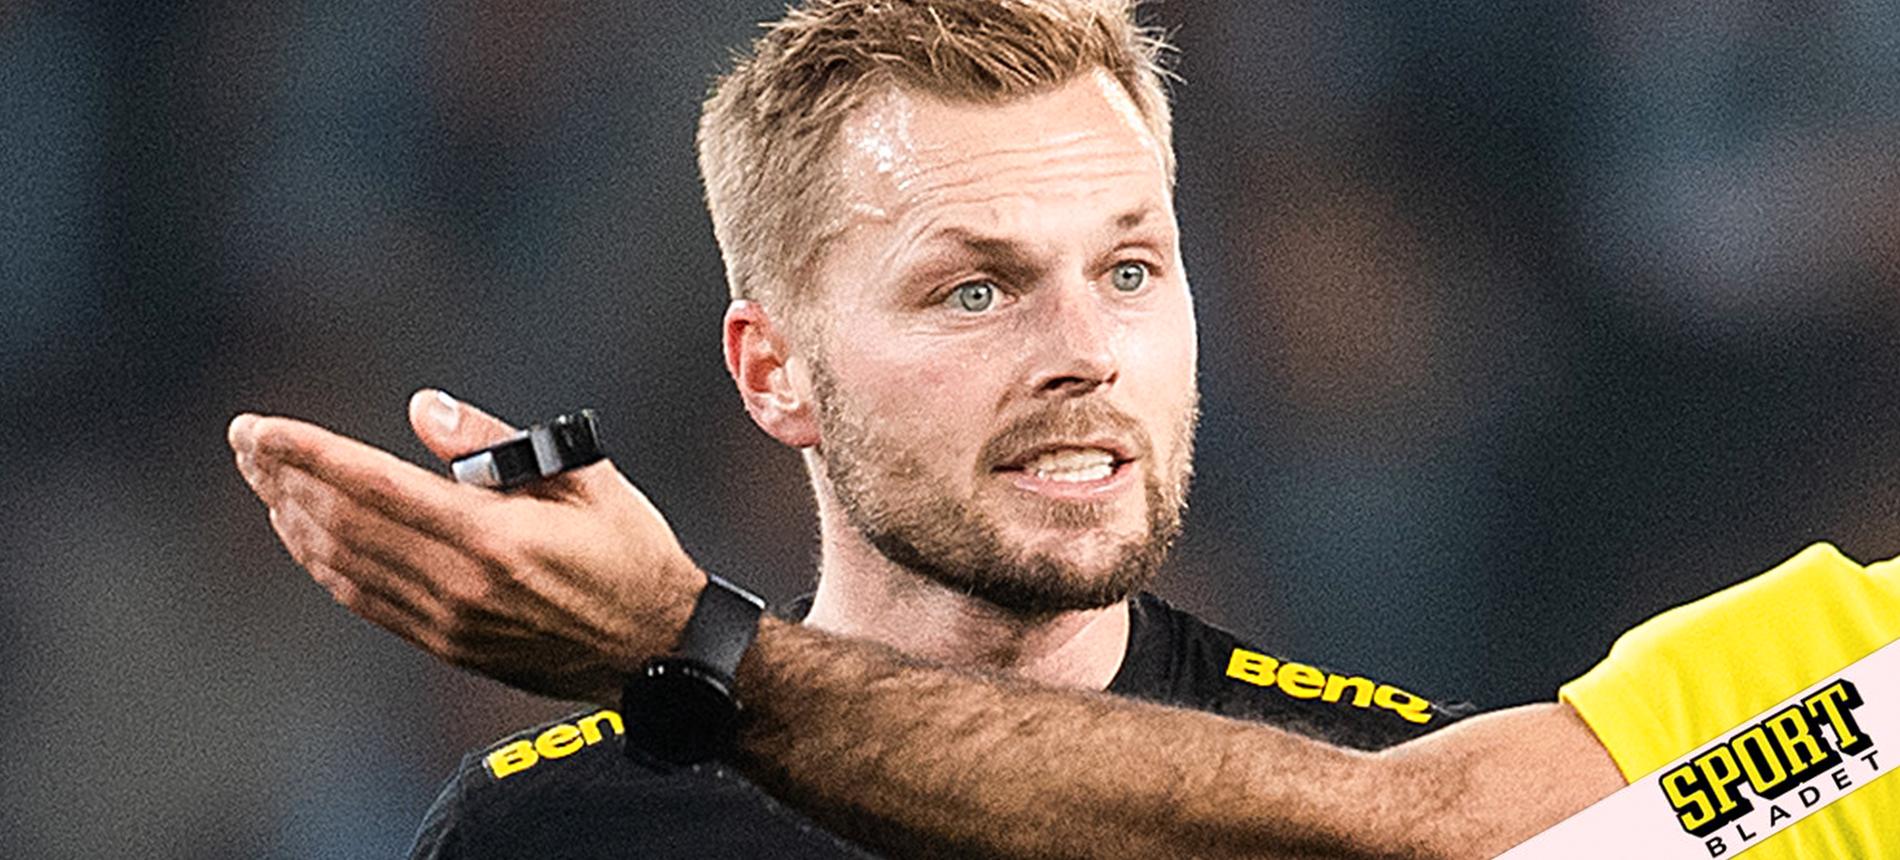 AIK Fotboll: Sebastian Larsson förlusten mot MFF: ”Vore bullshit”